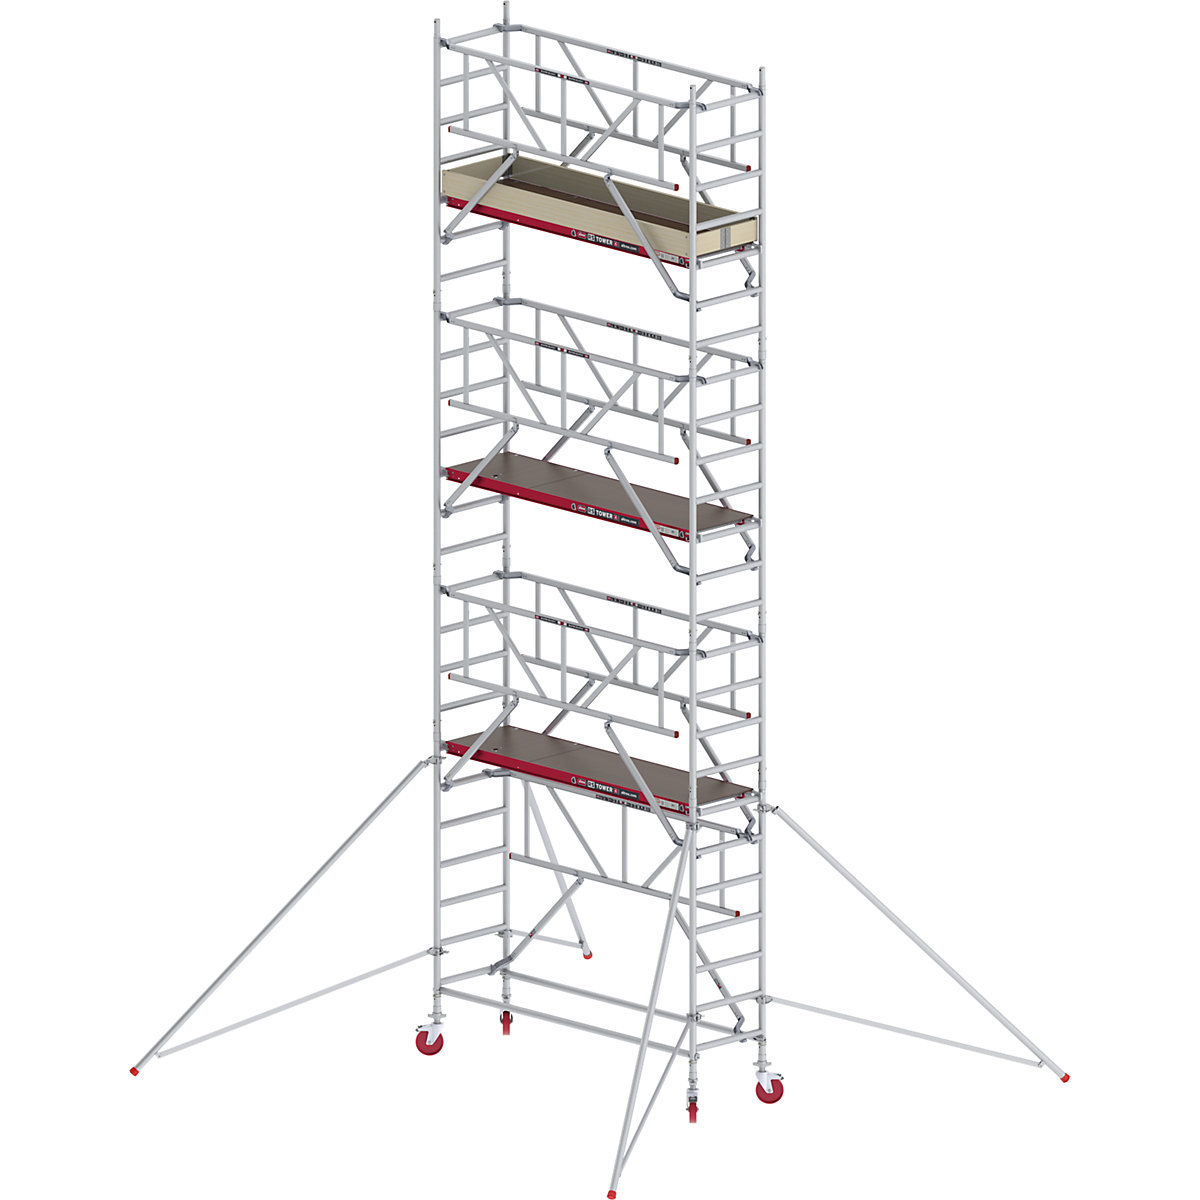 Rusztowanie ruchome RS TOWER 41, wąskie, z poręczą Safe-Quick® – Altrex, platforma drewniana, dł. 1,85 m, wys. robocza 8,20 m-1